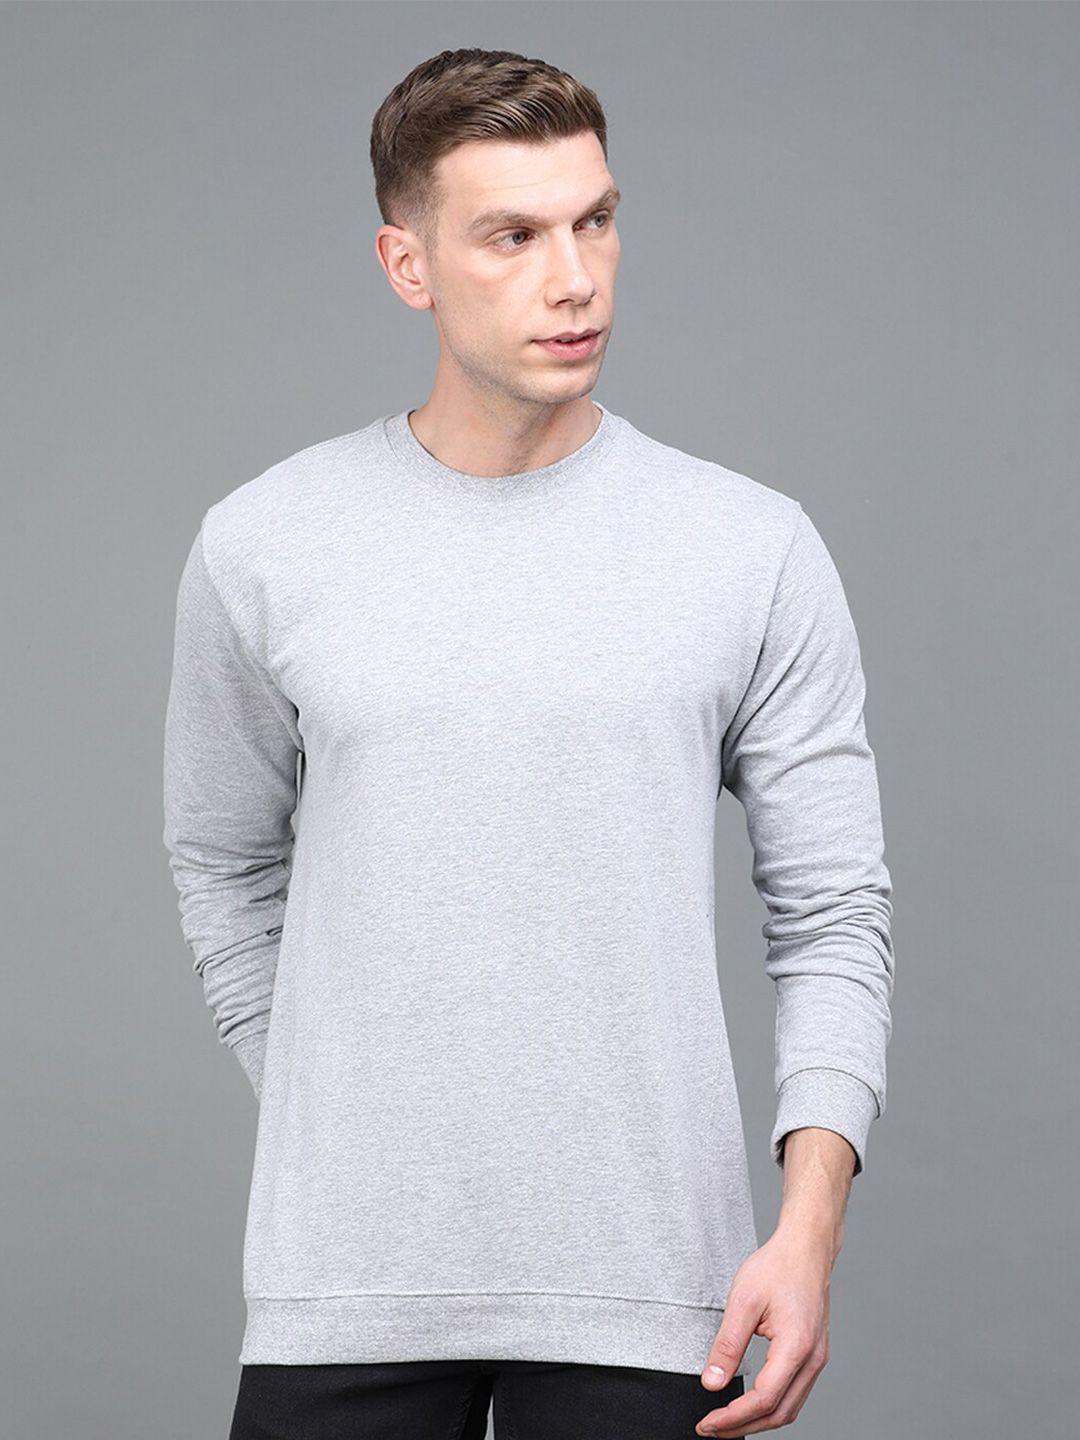 urban-dog-men-round-neck-cotton-sweatshirt